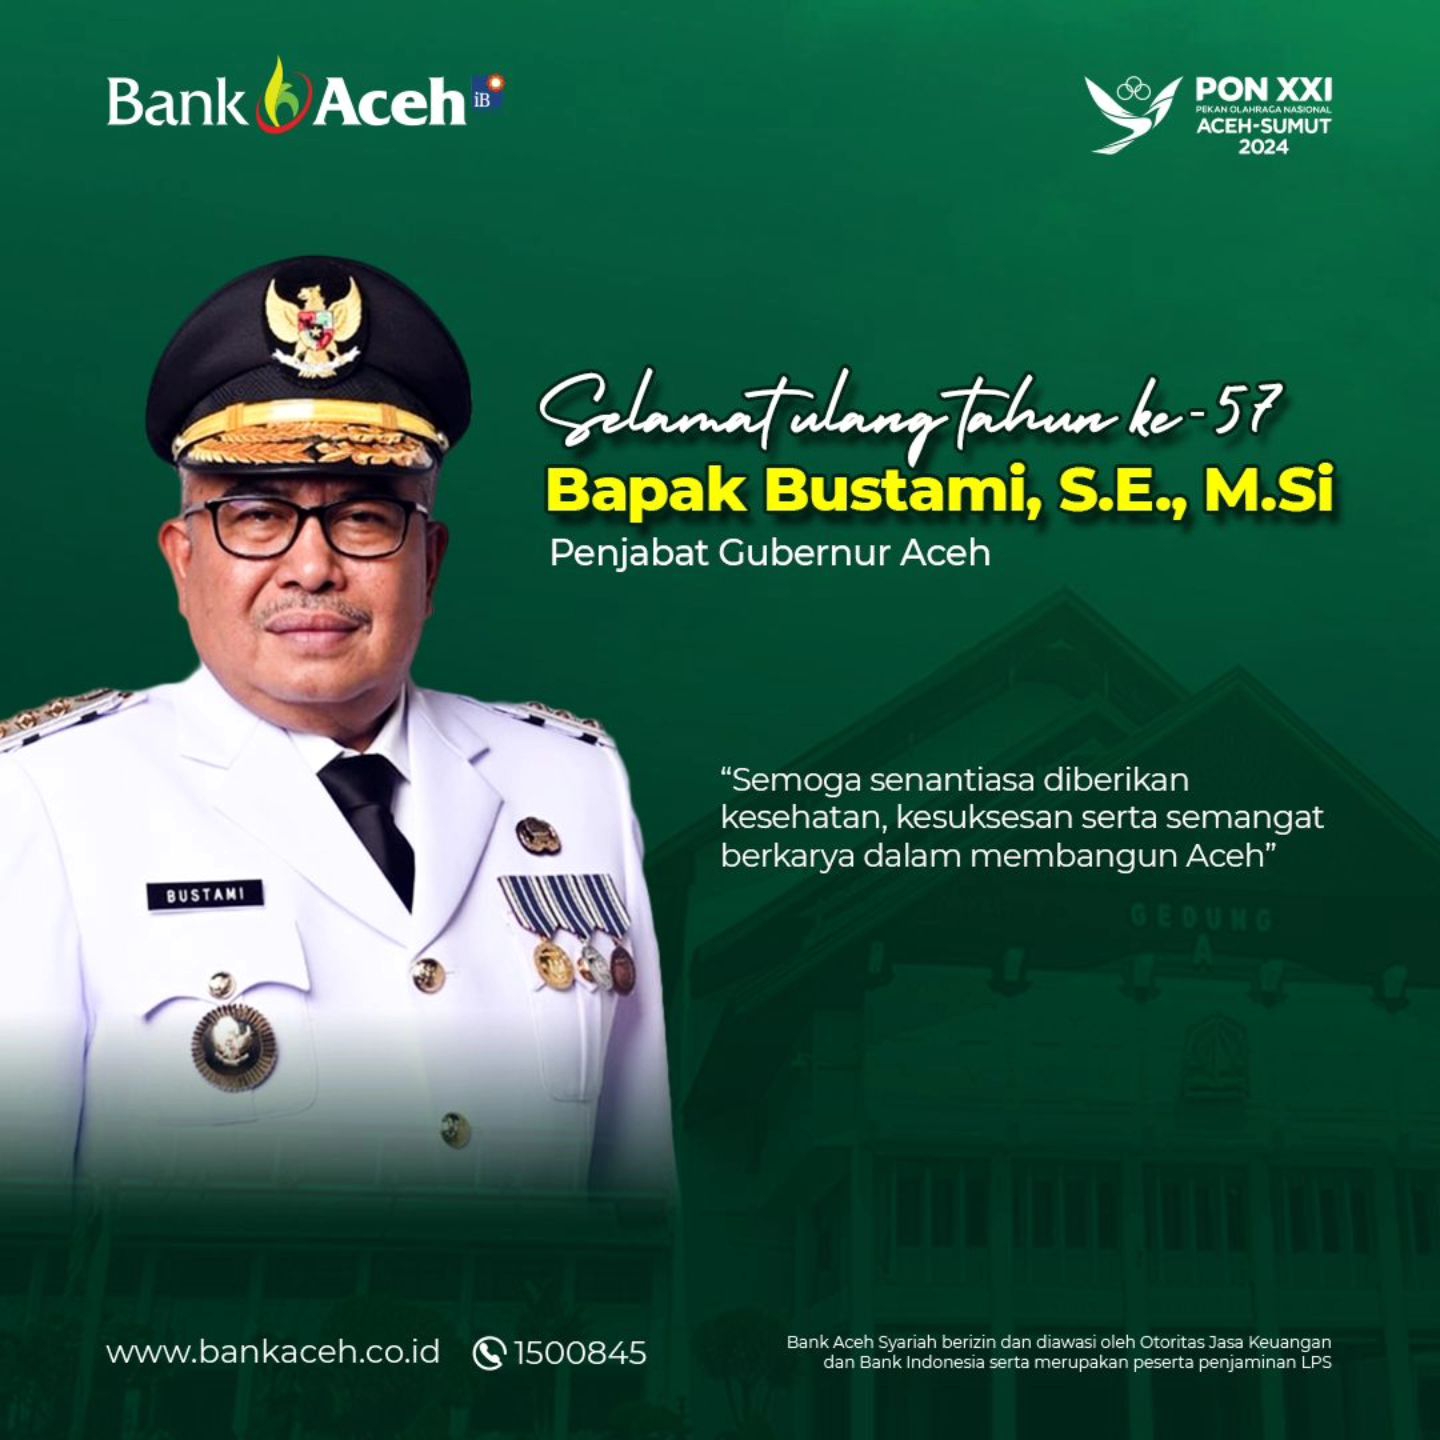 Selamat ulang tahun ke-57 Bapak Bustami, S.E., M.Si, Penjabat Gubernur Aceh